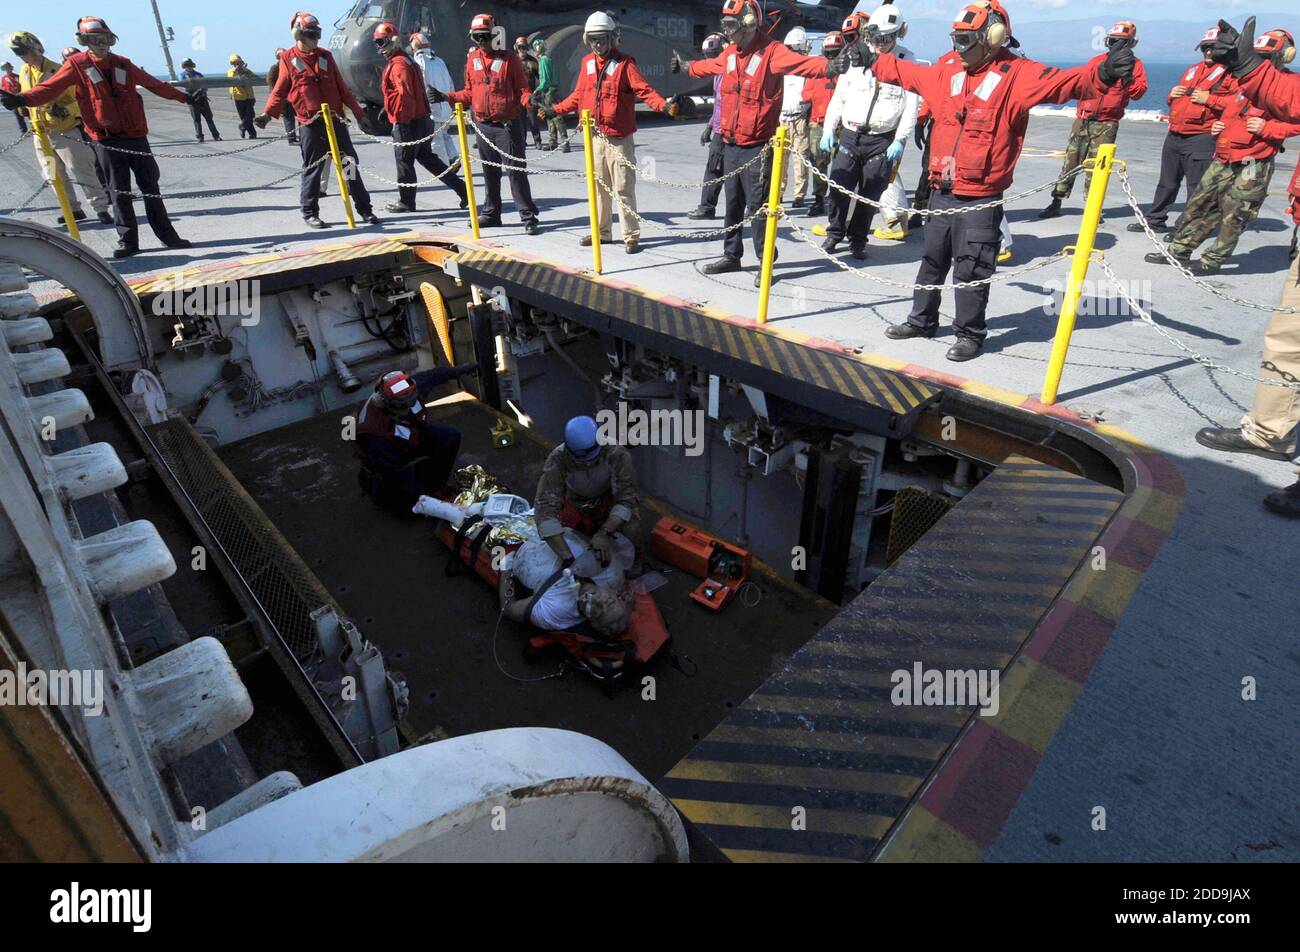 NO HAY PELÍCULA, NO HAY VIDEO, NO hay televisión, NO HAY DOCUMENTAL - los marineros de la Marina de los Estados Unidos entregan a un ciudadano estadounidense herido a USS Carl Vinson el viernes, 15 de enero de 2010. El departamento de Servicios de Salud trasladó al hombre a uno de los ascensores de la cubierta para el traslado a la instalación médica del barco. Carl Vinson y Carrier Air Wing 17 están llevando a cabo operaciones humanitarias y de socorro en casos de desastre en Haití en respuesta al desastre del terremoto del 12 de enero de 2010. Foto de Adrian White/Noticias de la Marina de EE.UU. Foto/MCT/ABACAPRESS.COM Foto de stock